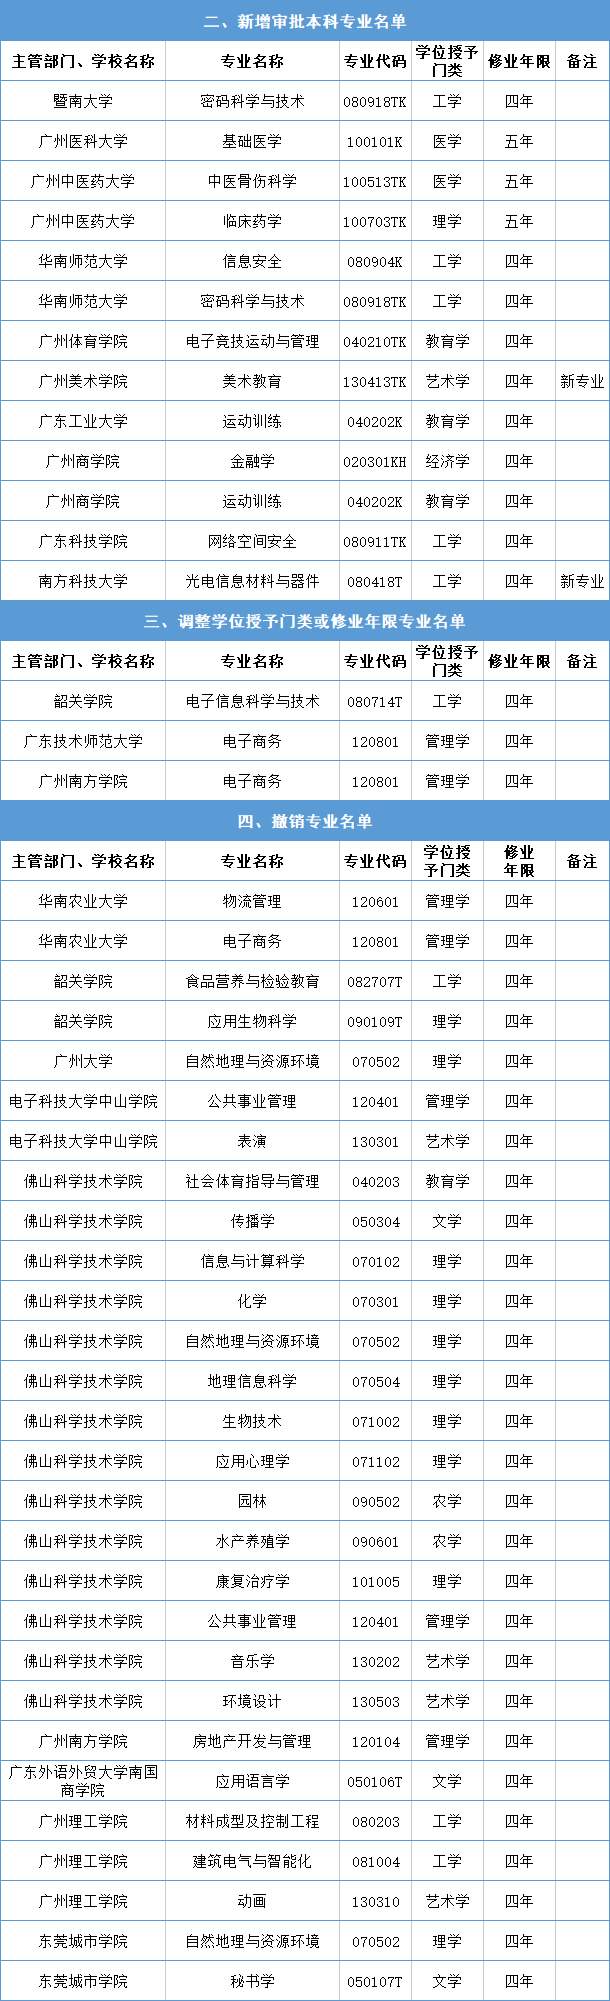 广东专业目录-广东本科专业名称及代码